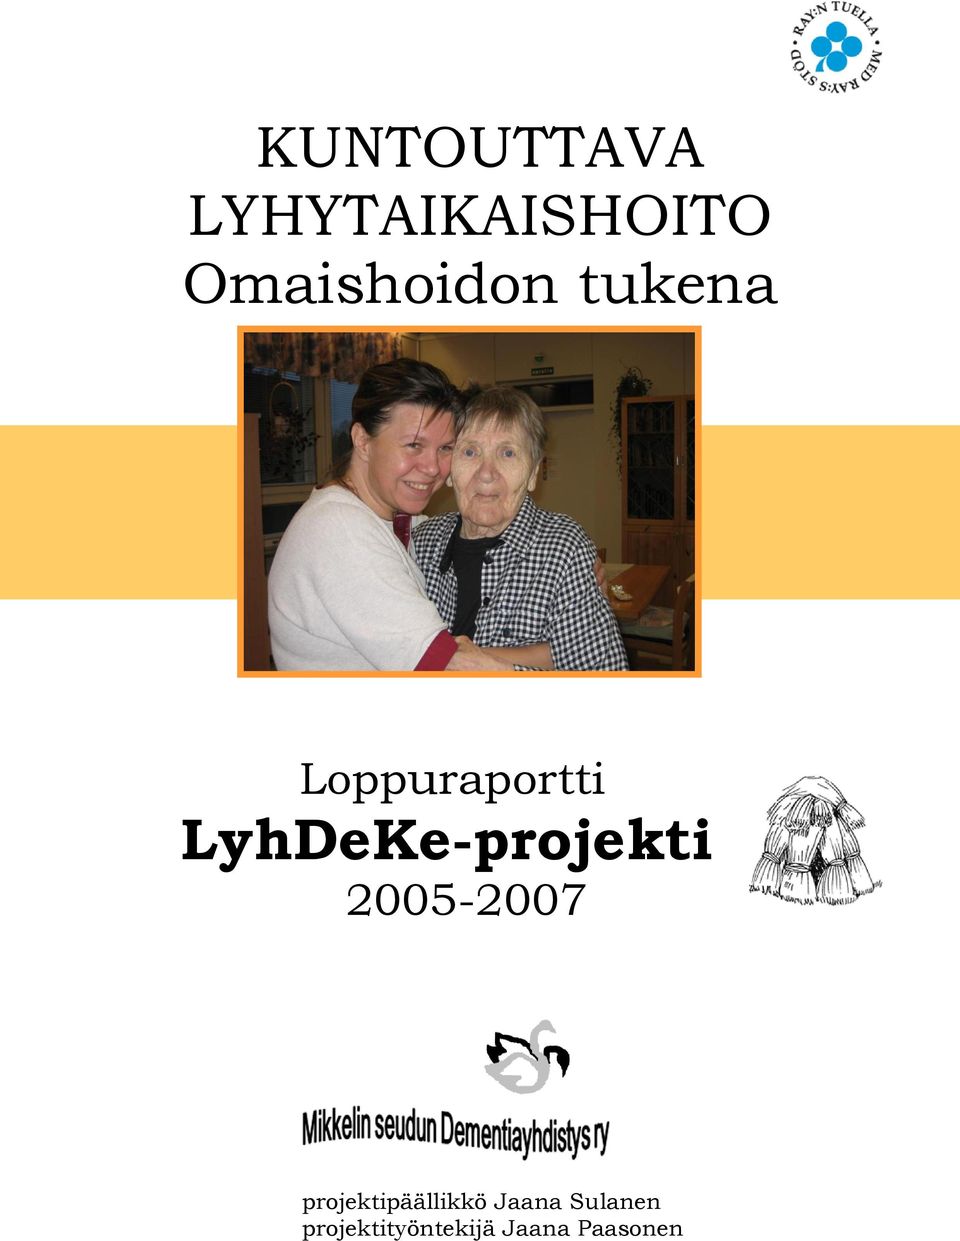 LyhDeKe-projekti 2005-2007